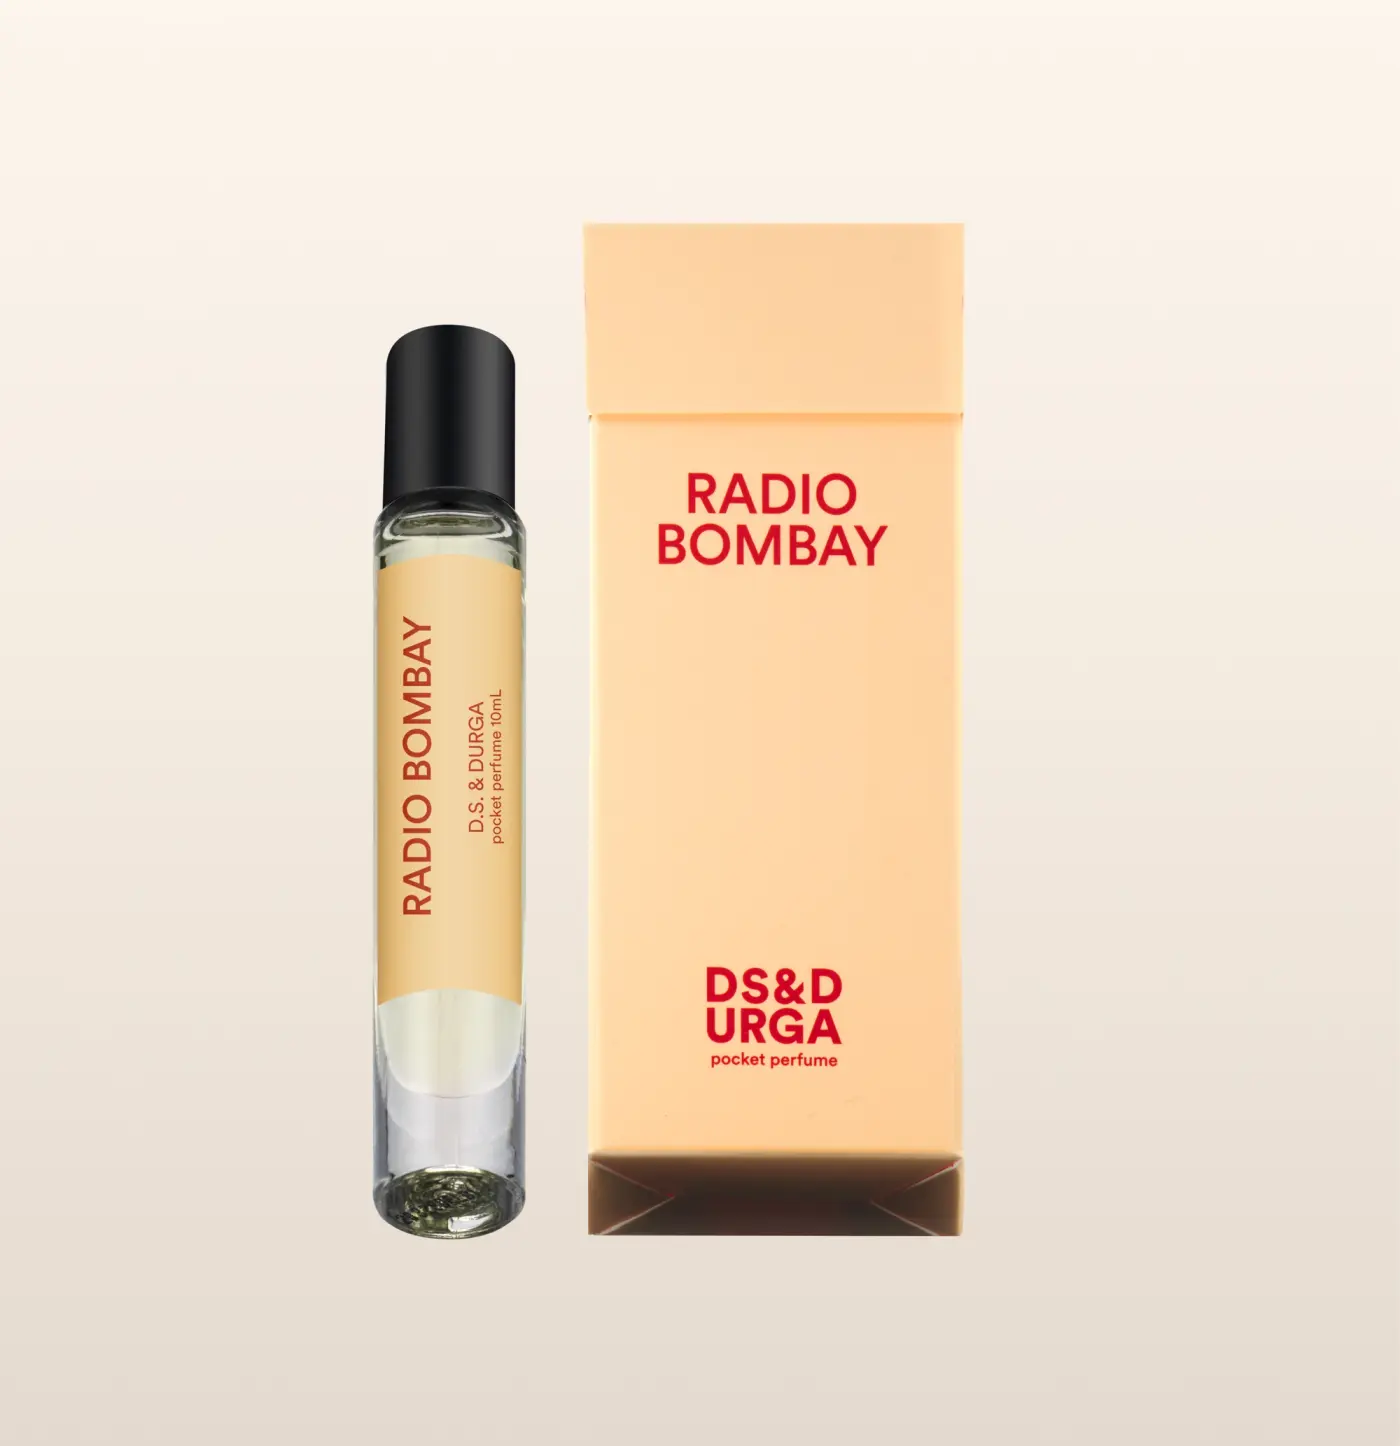 Radio Bombay Pocket Perfume by D.S. & Durga